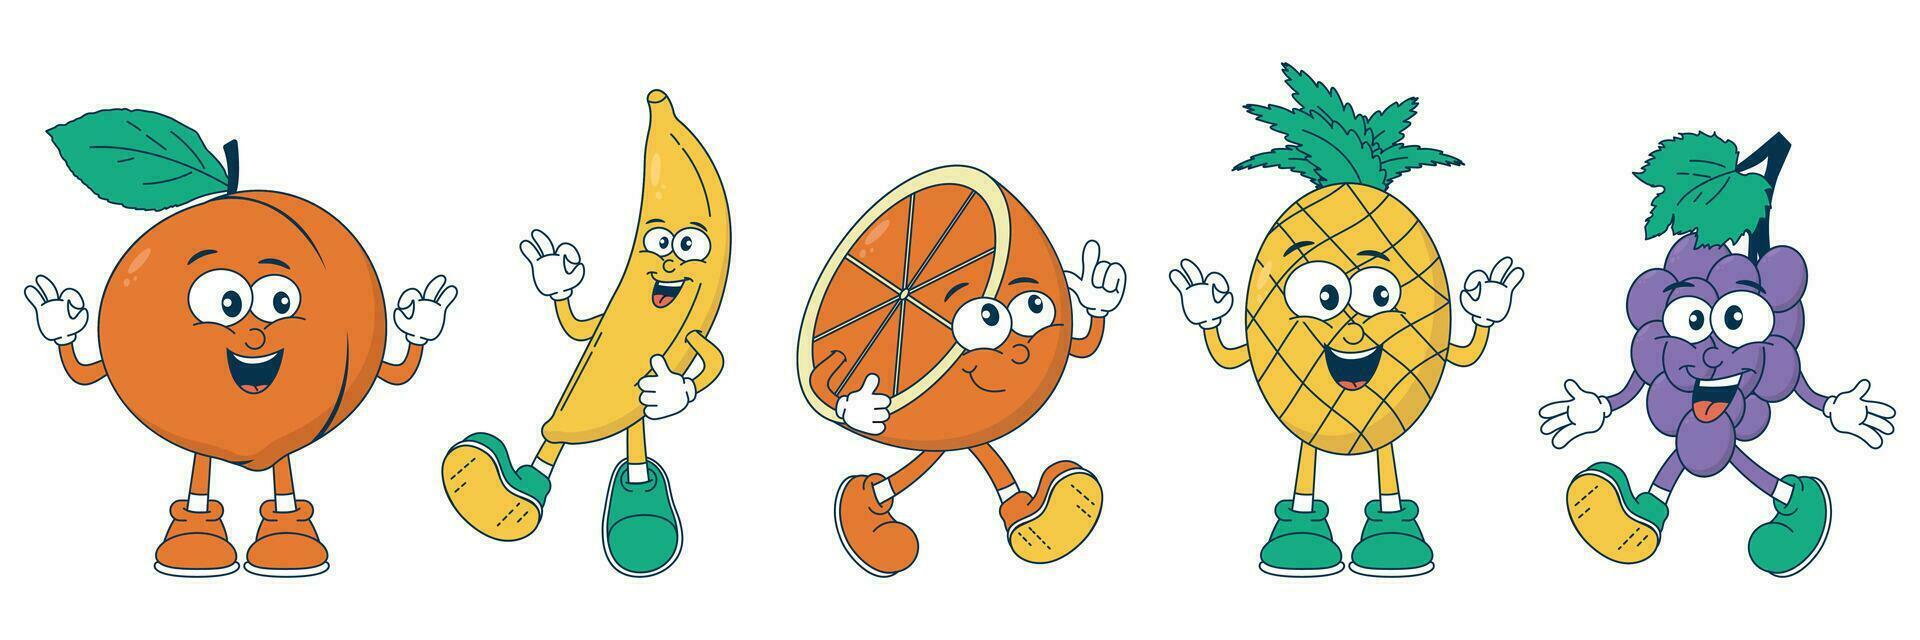 rétro dessin animé fruit personnages ananas, banane, raisin, orange, pêche dans froussard style. bande dessinée mascotte avec une content affronter, bras, jambes. juteux, brillant vecteur autocollant dans Années 90 style.